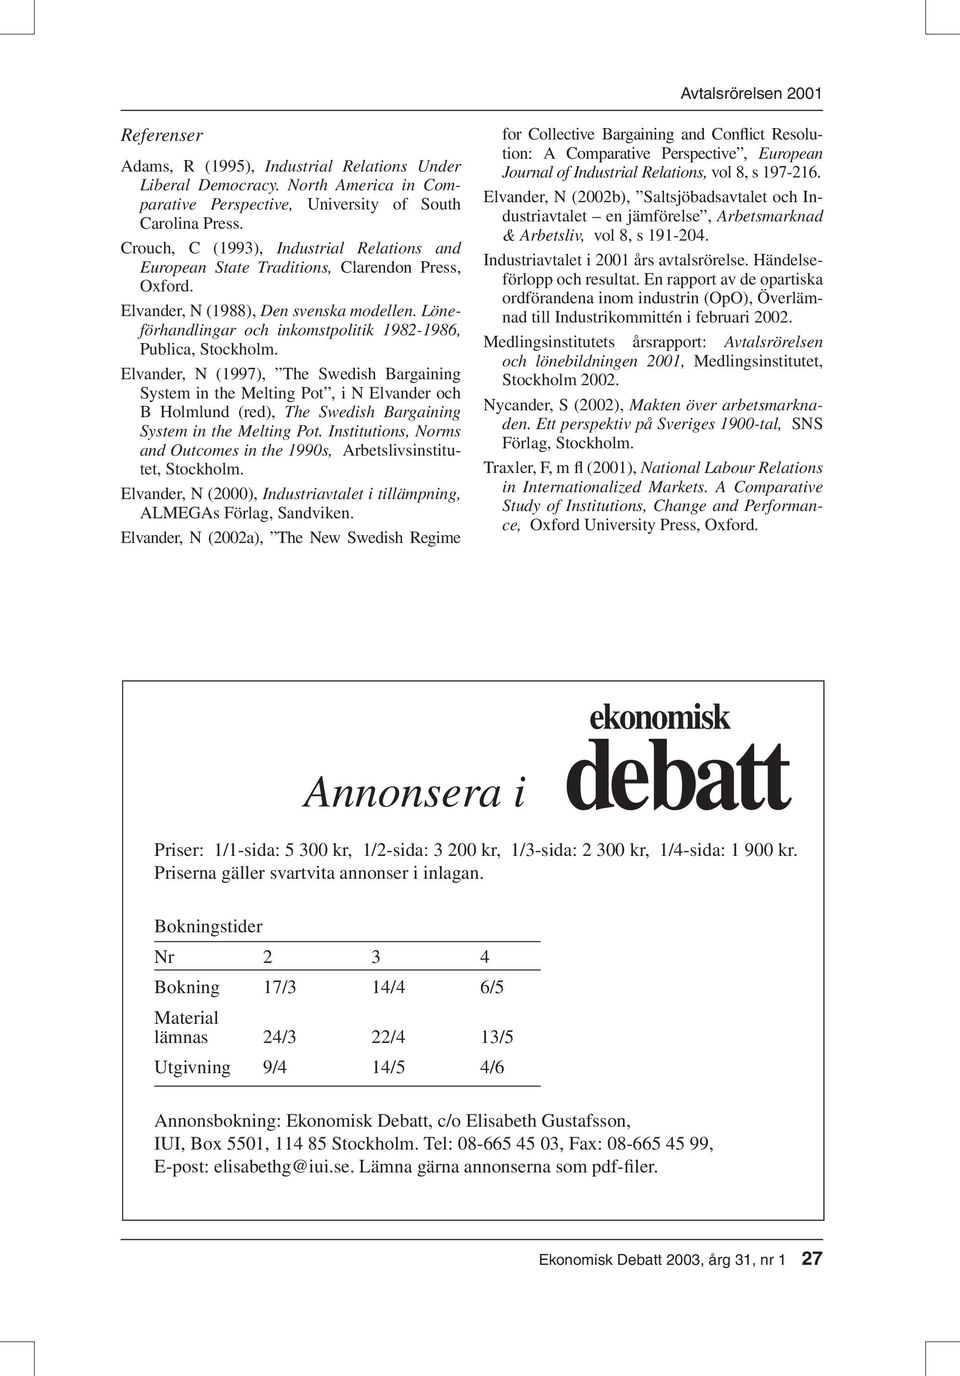 Löneförhandlingar och inkomstpolitik 1982-1986, Publica, Stockholm.